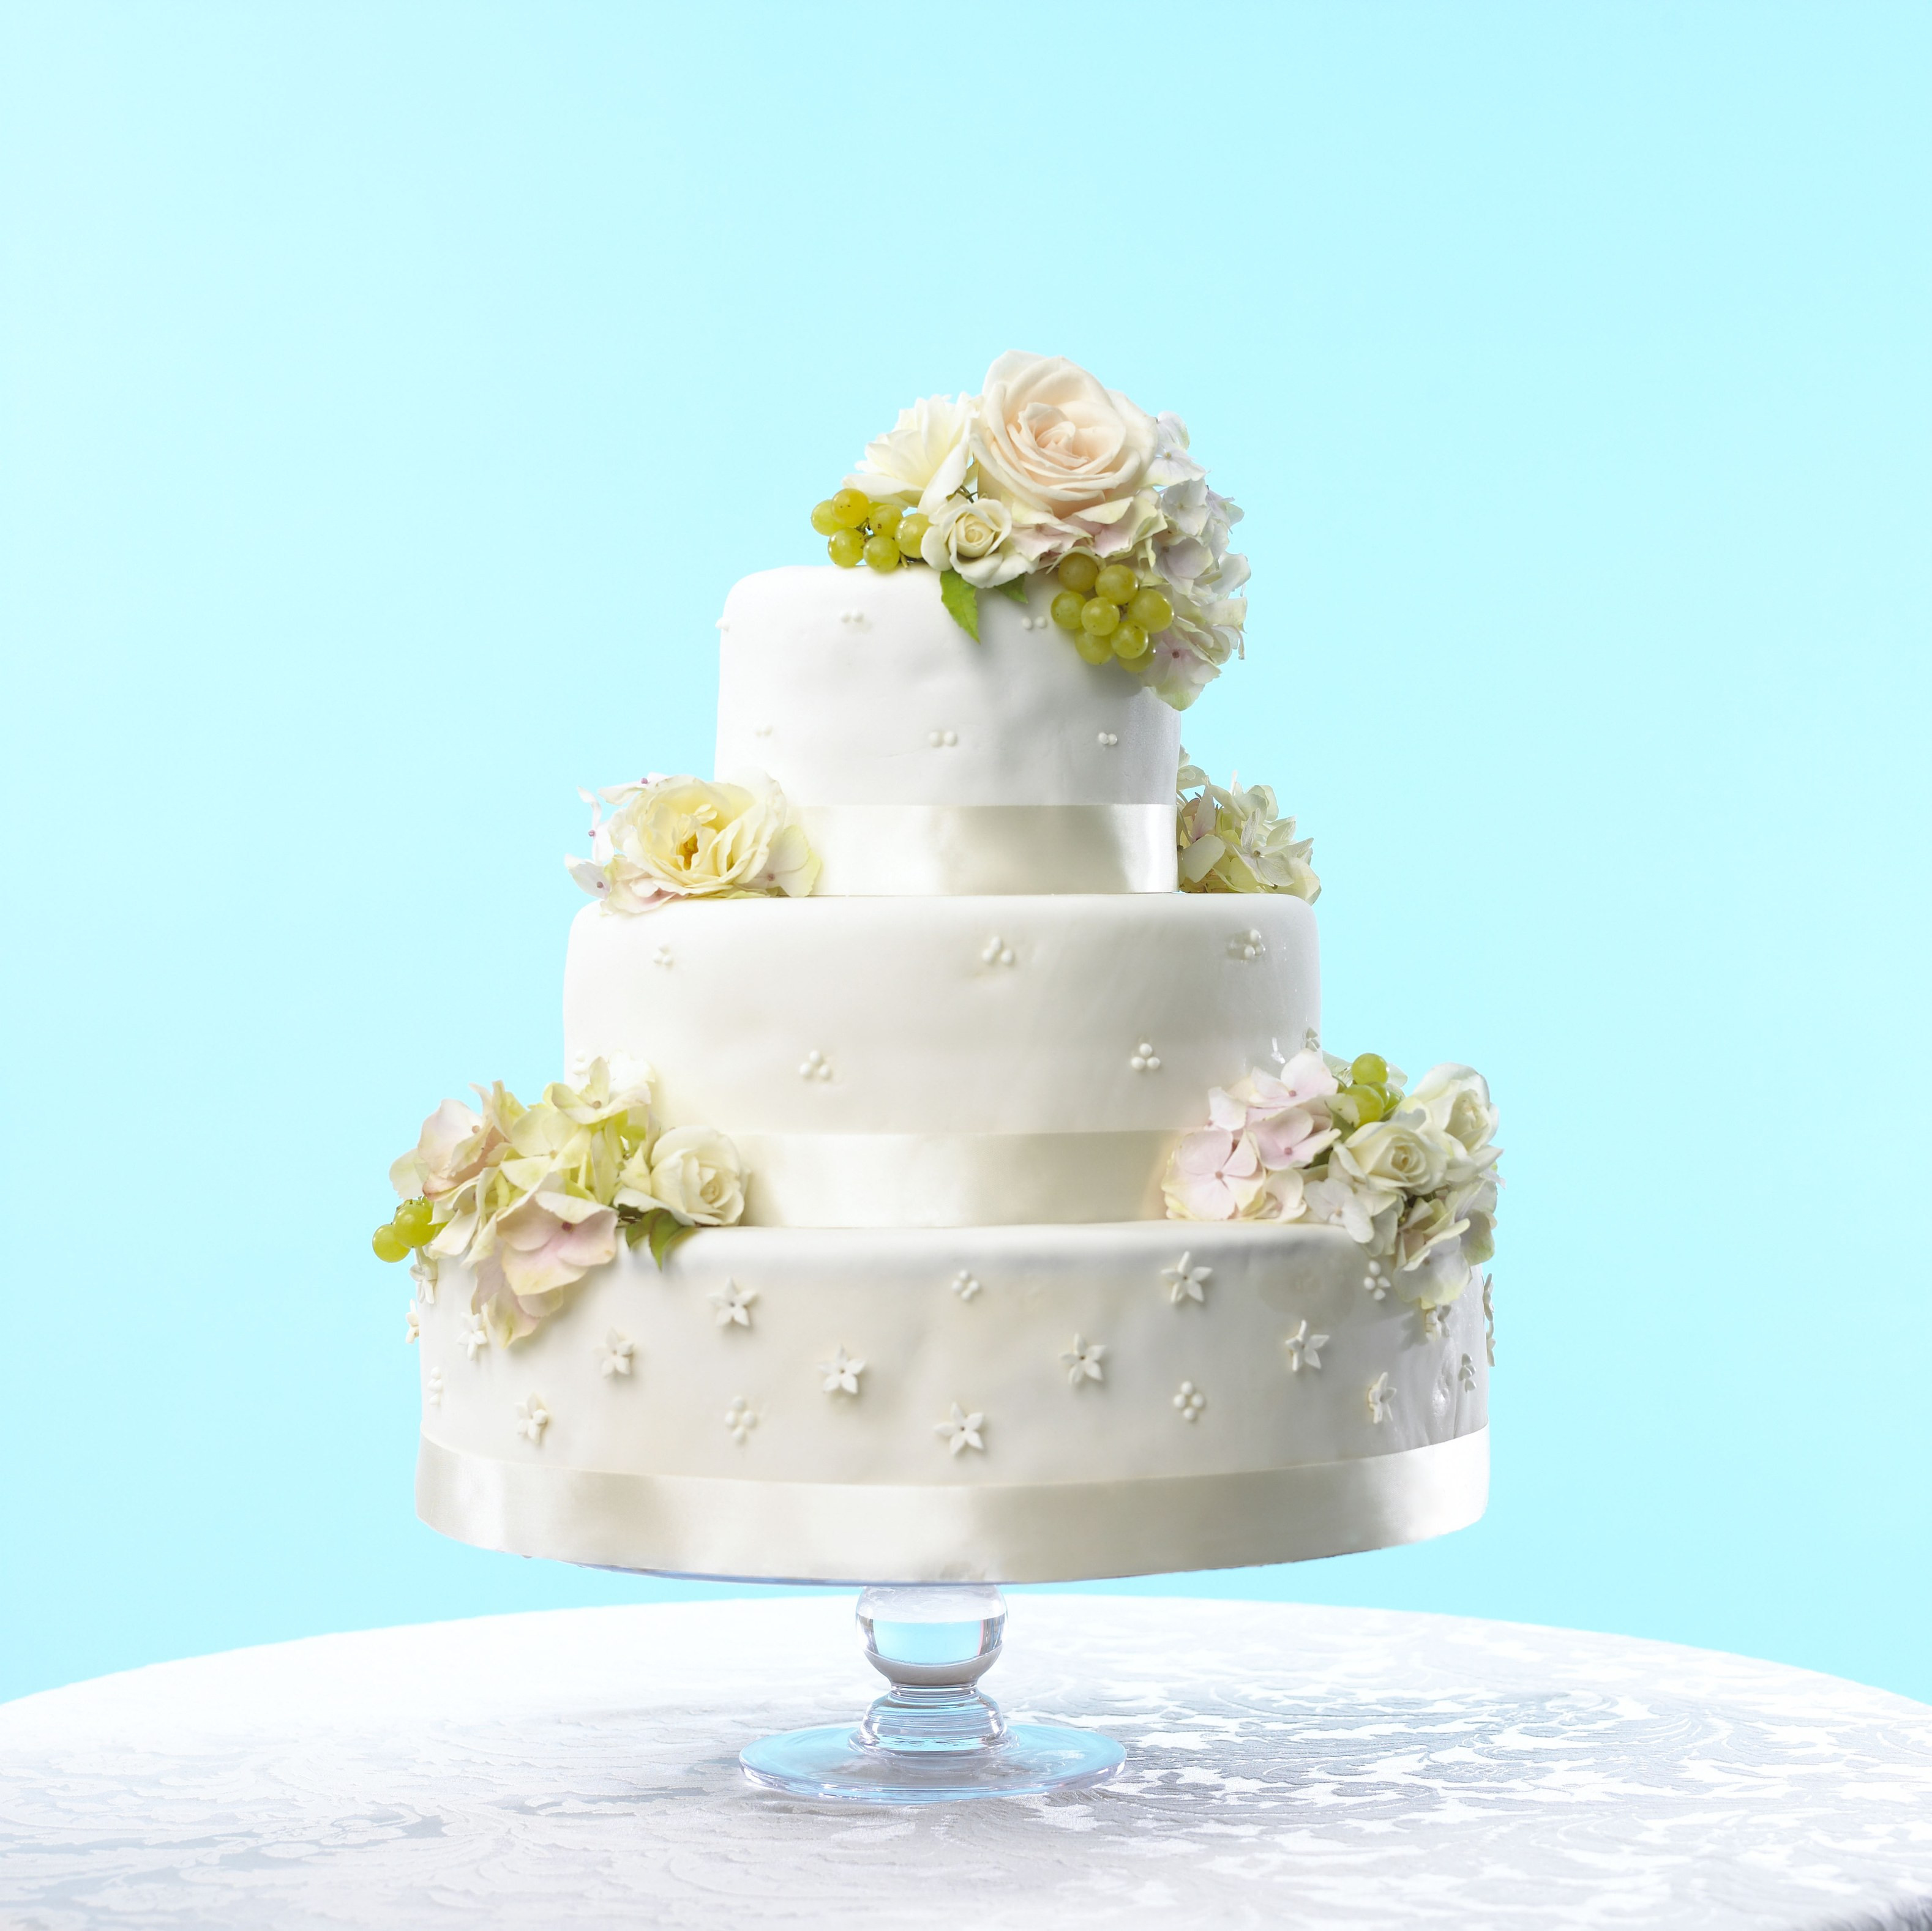 Wedding Cakes Images
 This Wedding Cake Looks Exactly Like a Life Size Wedding